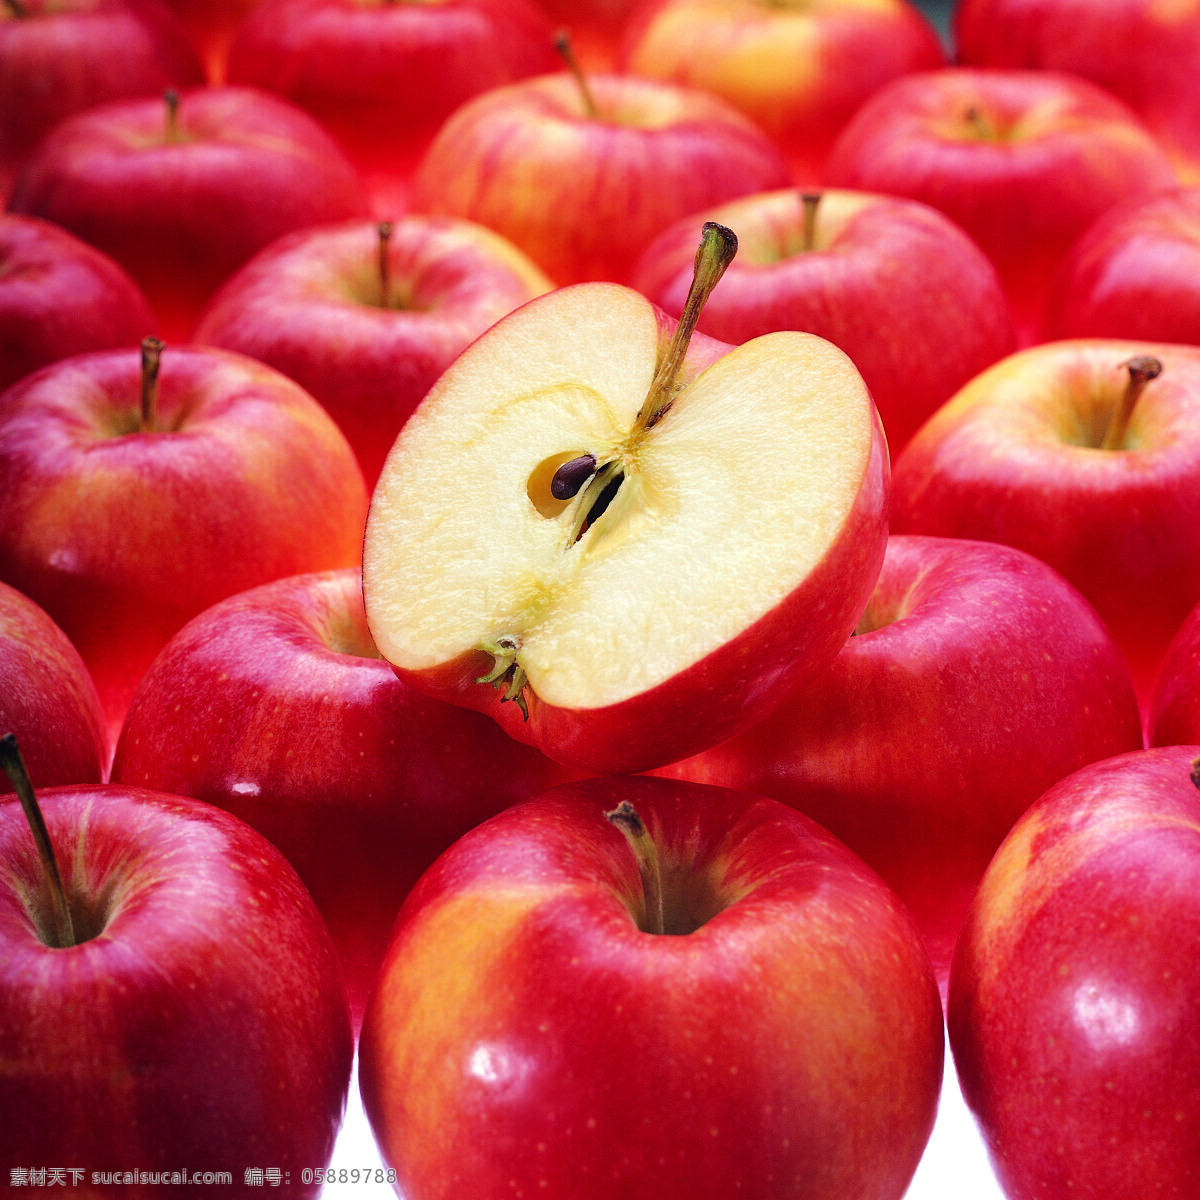 红苹果背景 背景 苹果 酸甜 水果 蔬果 富士 大红 红色 水嫩 新鲜 香甜 好吃 一堆 堆迭 排列 整齐 生物世界